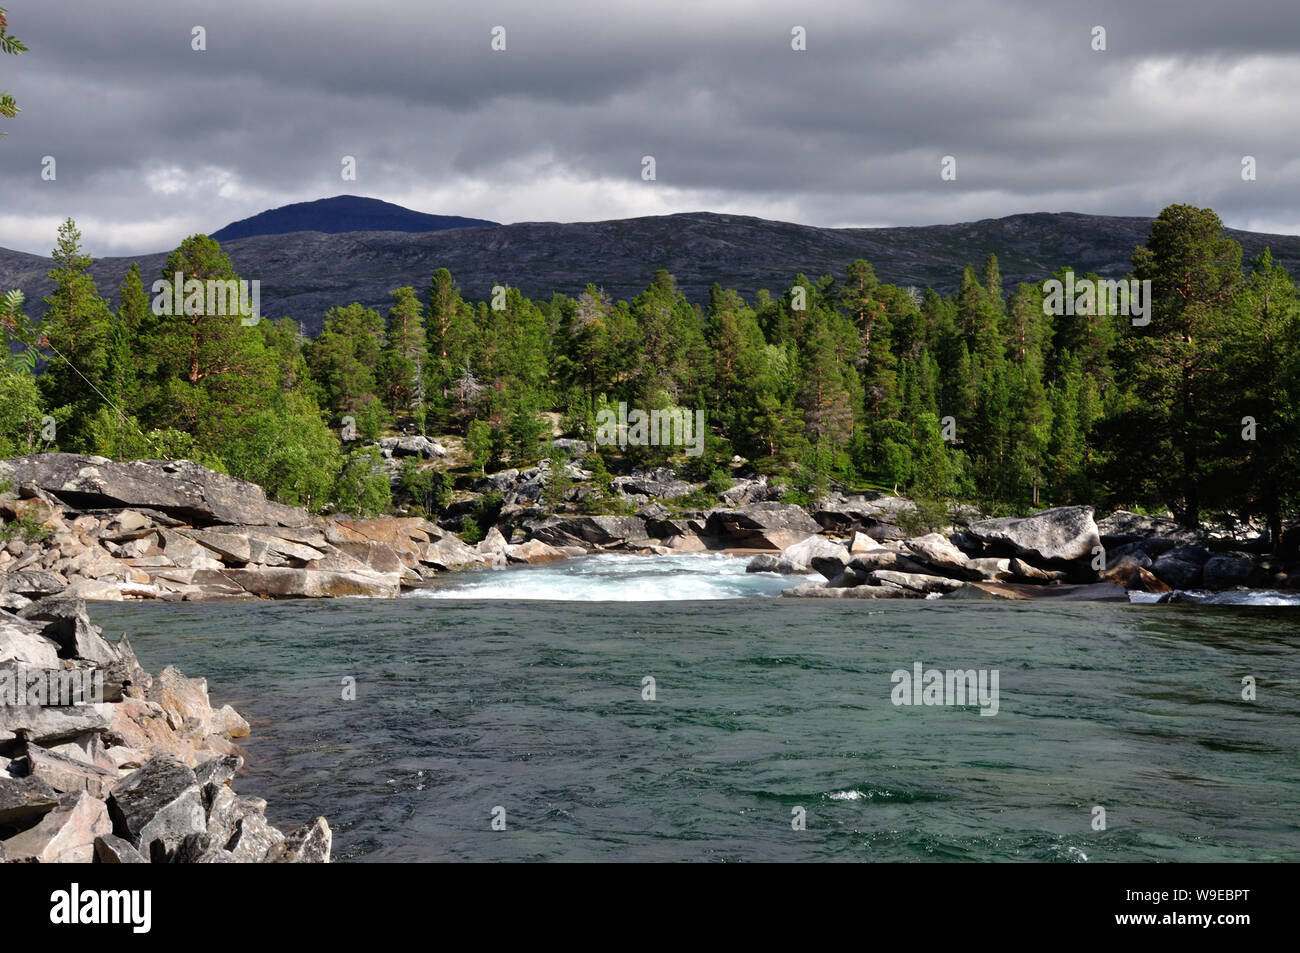 Nahe von Loensdal etwas nördlich vom Polarkreis im Nationalpark Saltfjellet-Svartisen in Norwegen zieht sich der Fluss Luonosjahka malerisch an der na Stock Photo